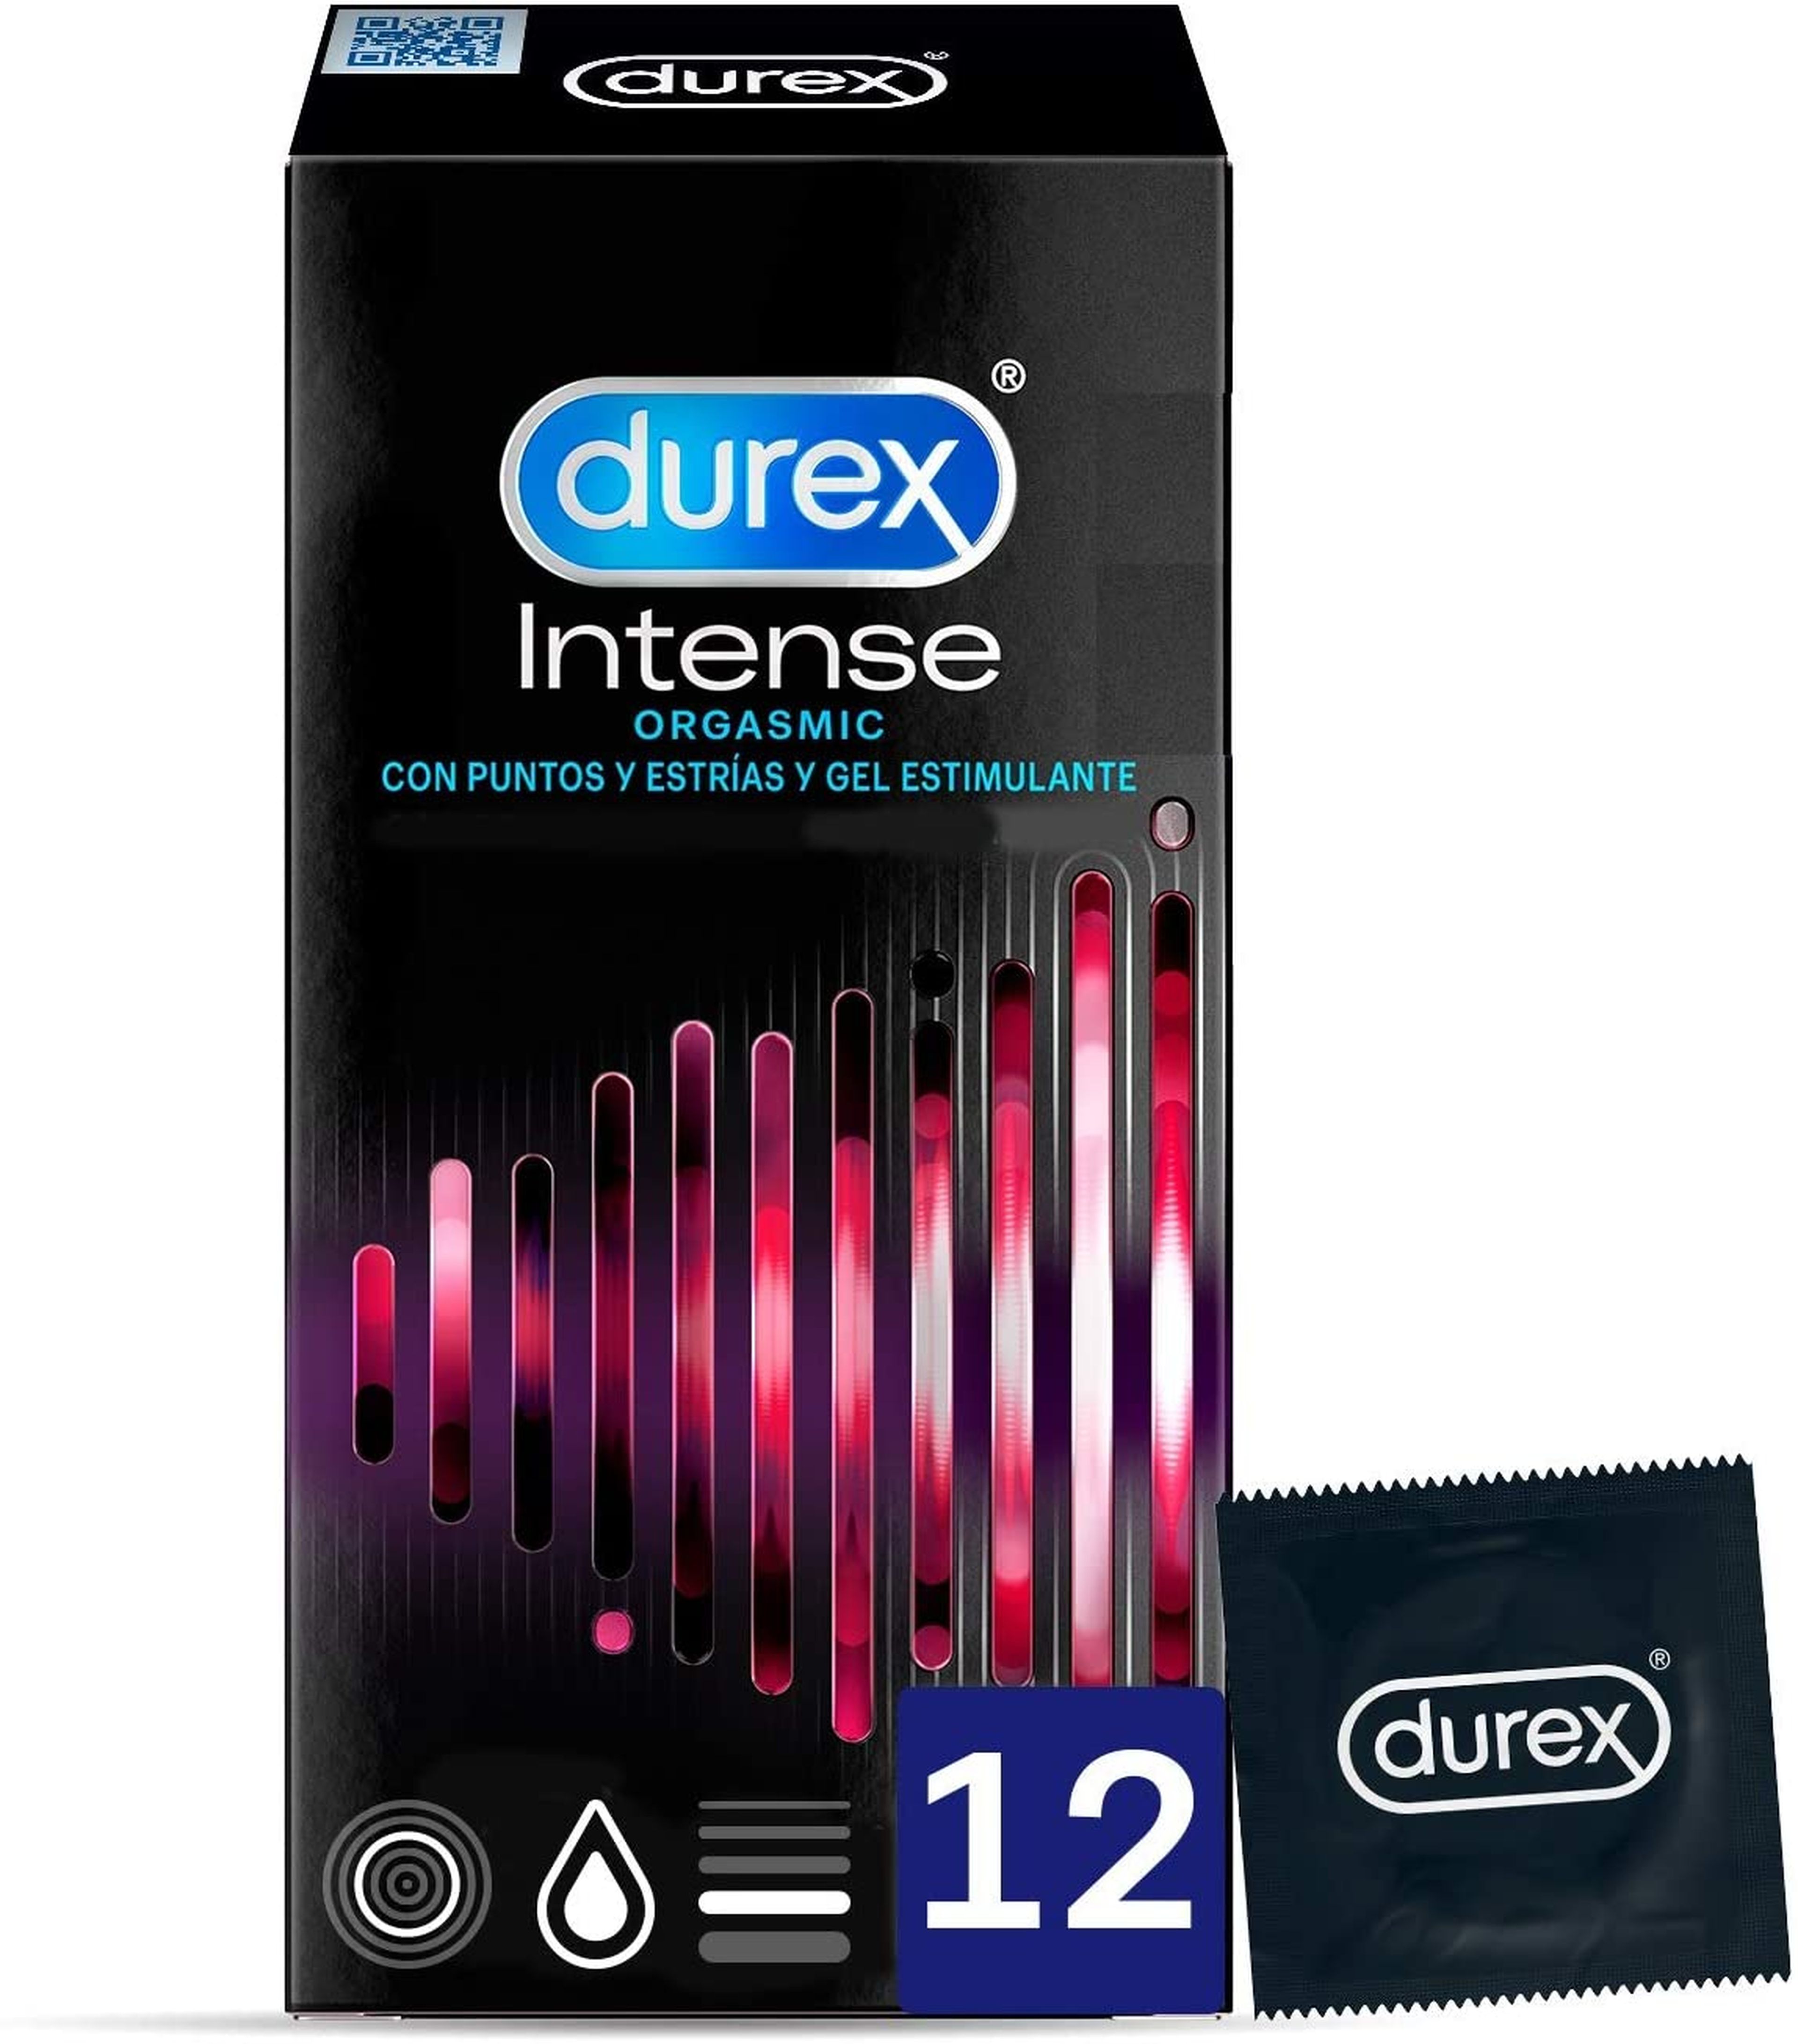 Durex Intense